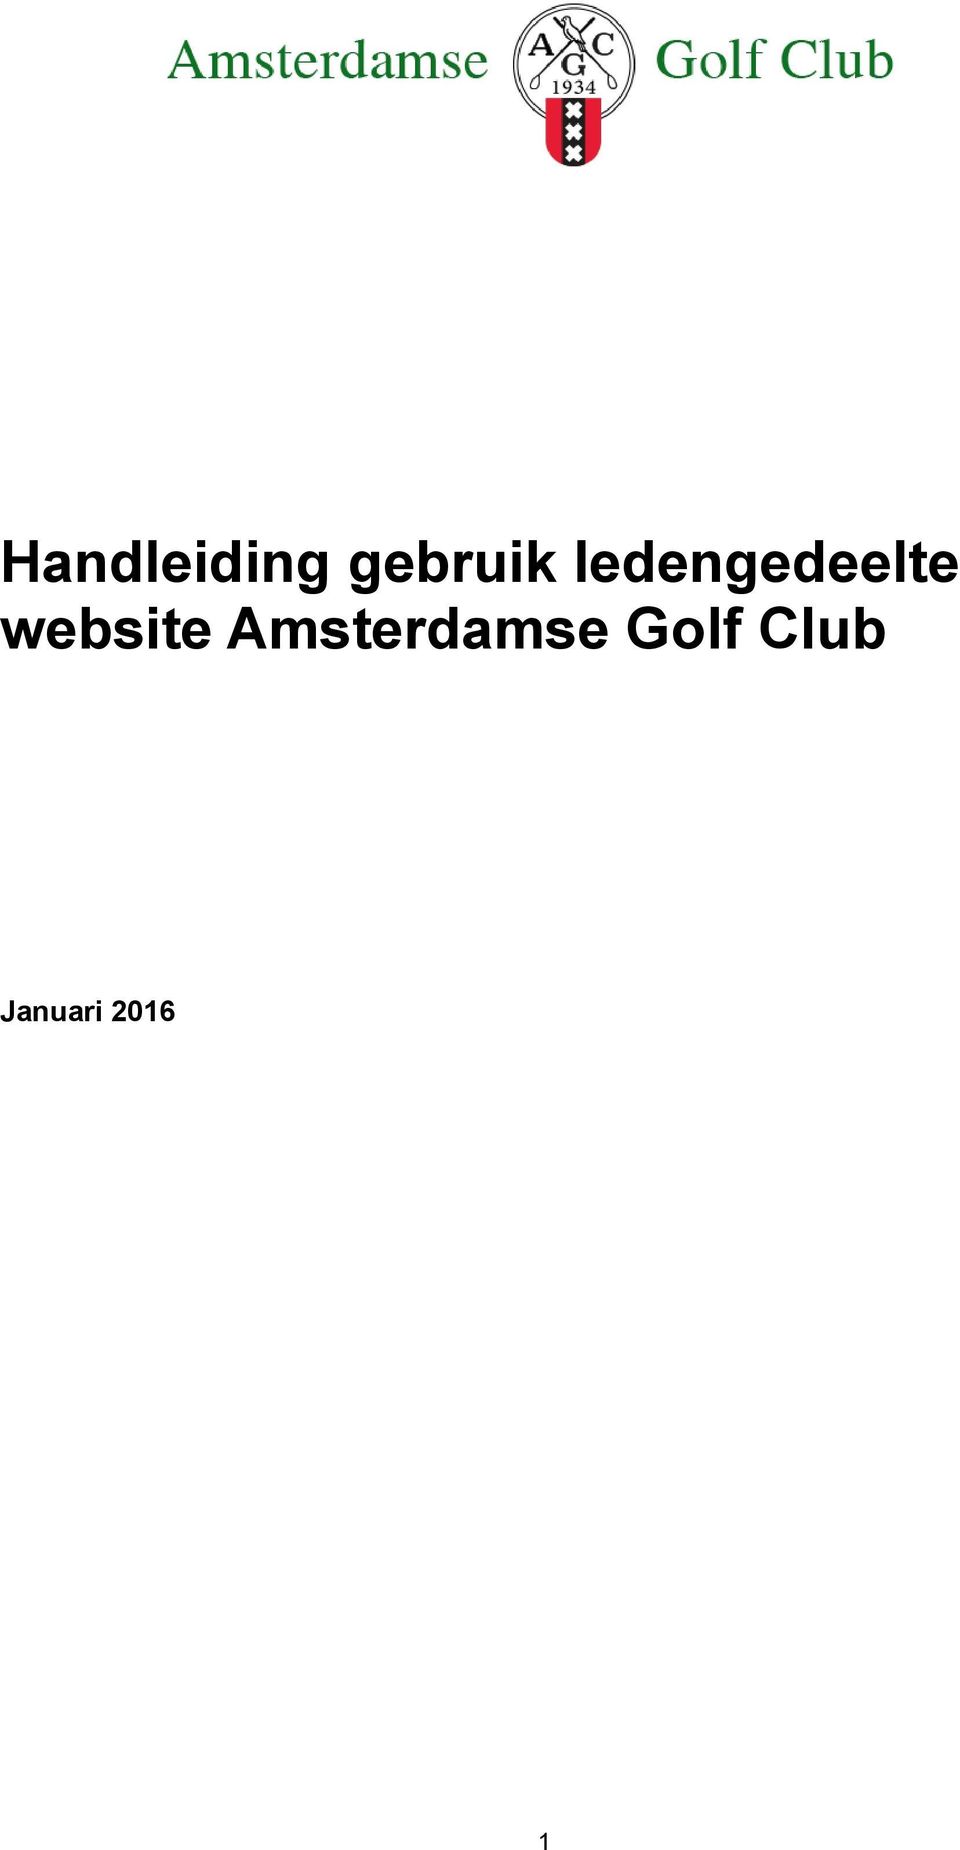 website Amsterdamse